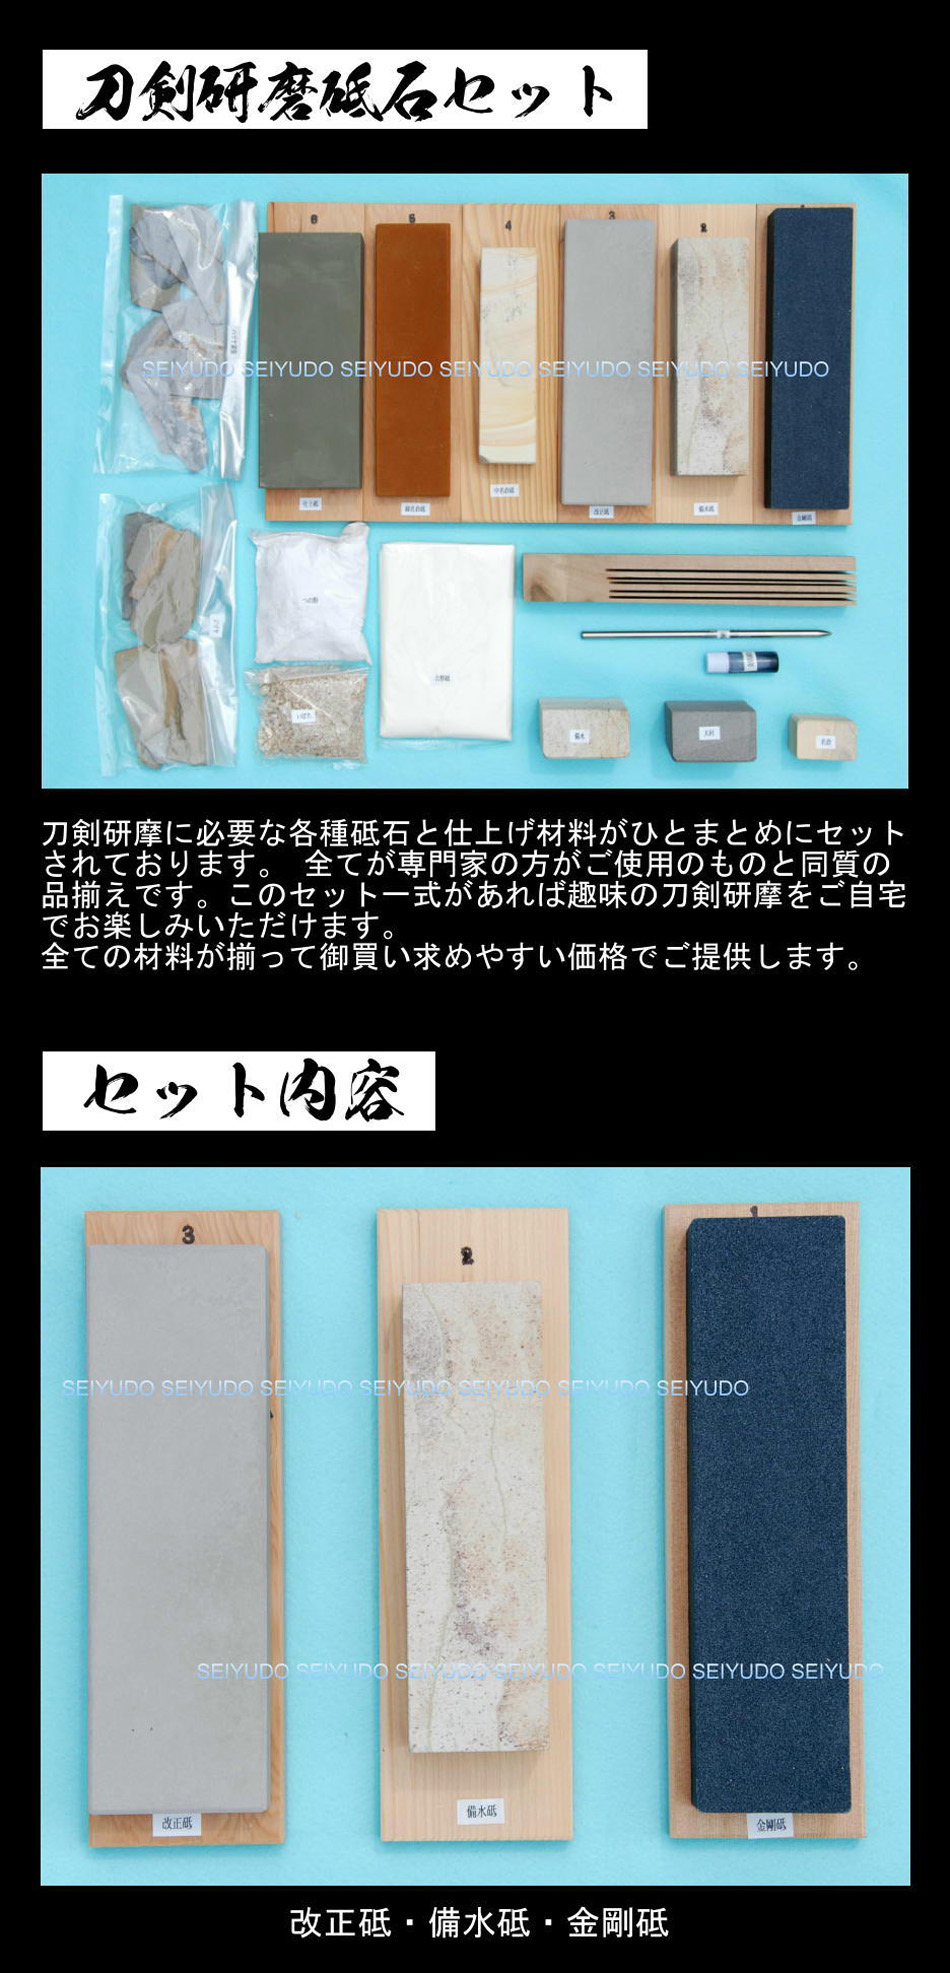 刀剣研磨砥石セット(OI-08114)｜刀・日本刀の販売なら日本刀専門店の 